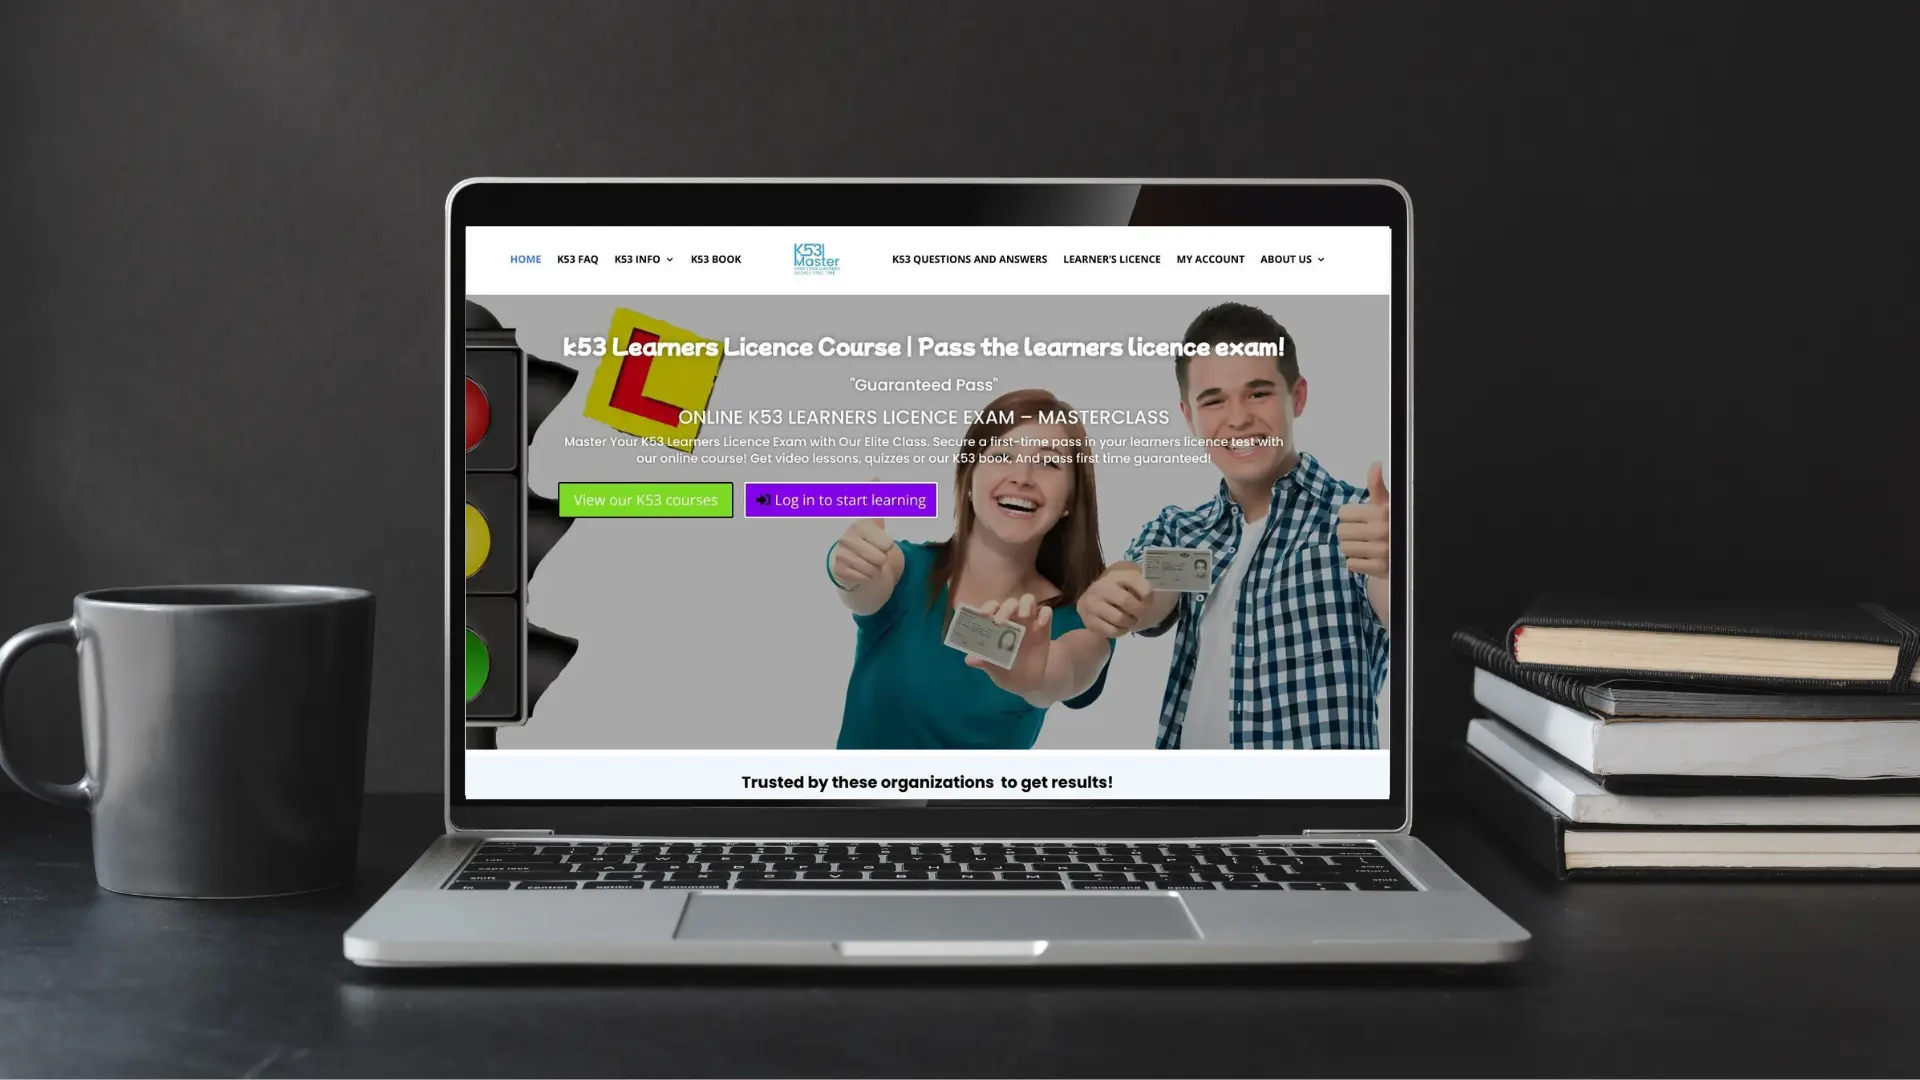 LMS website design displayed on a laptop